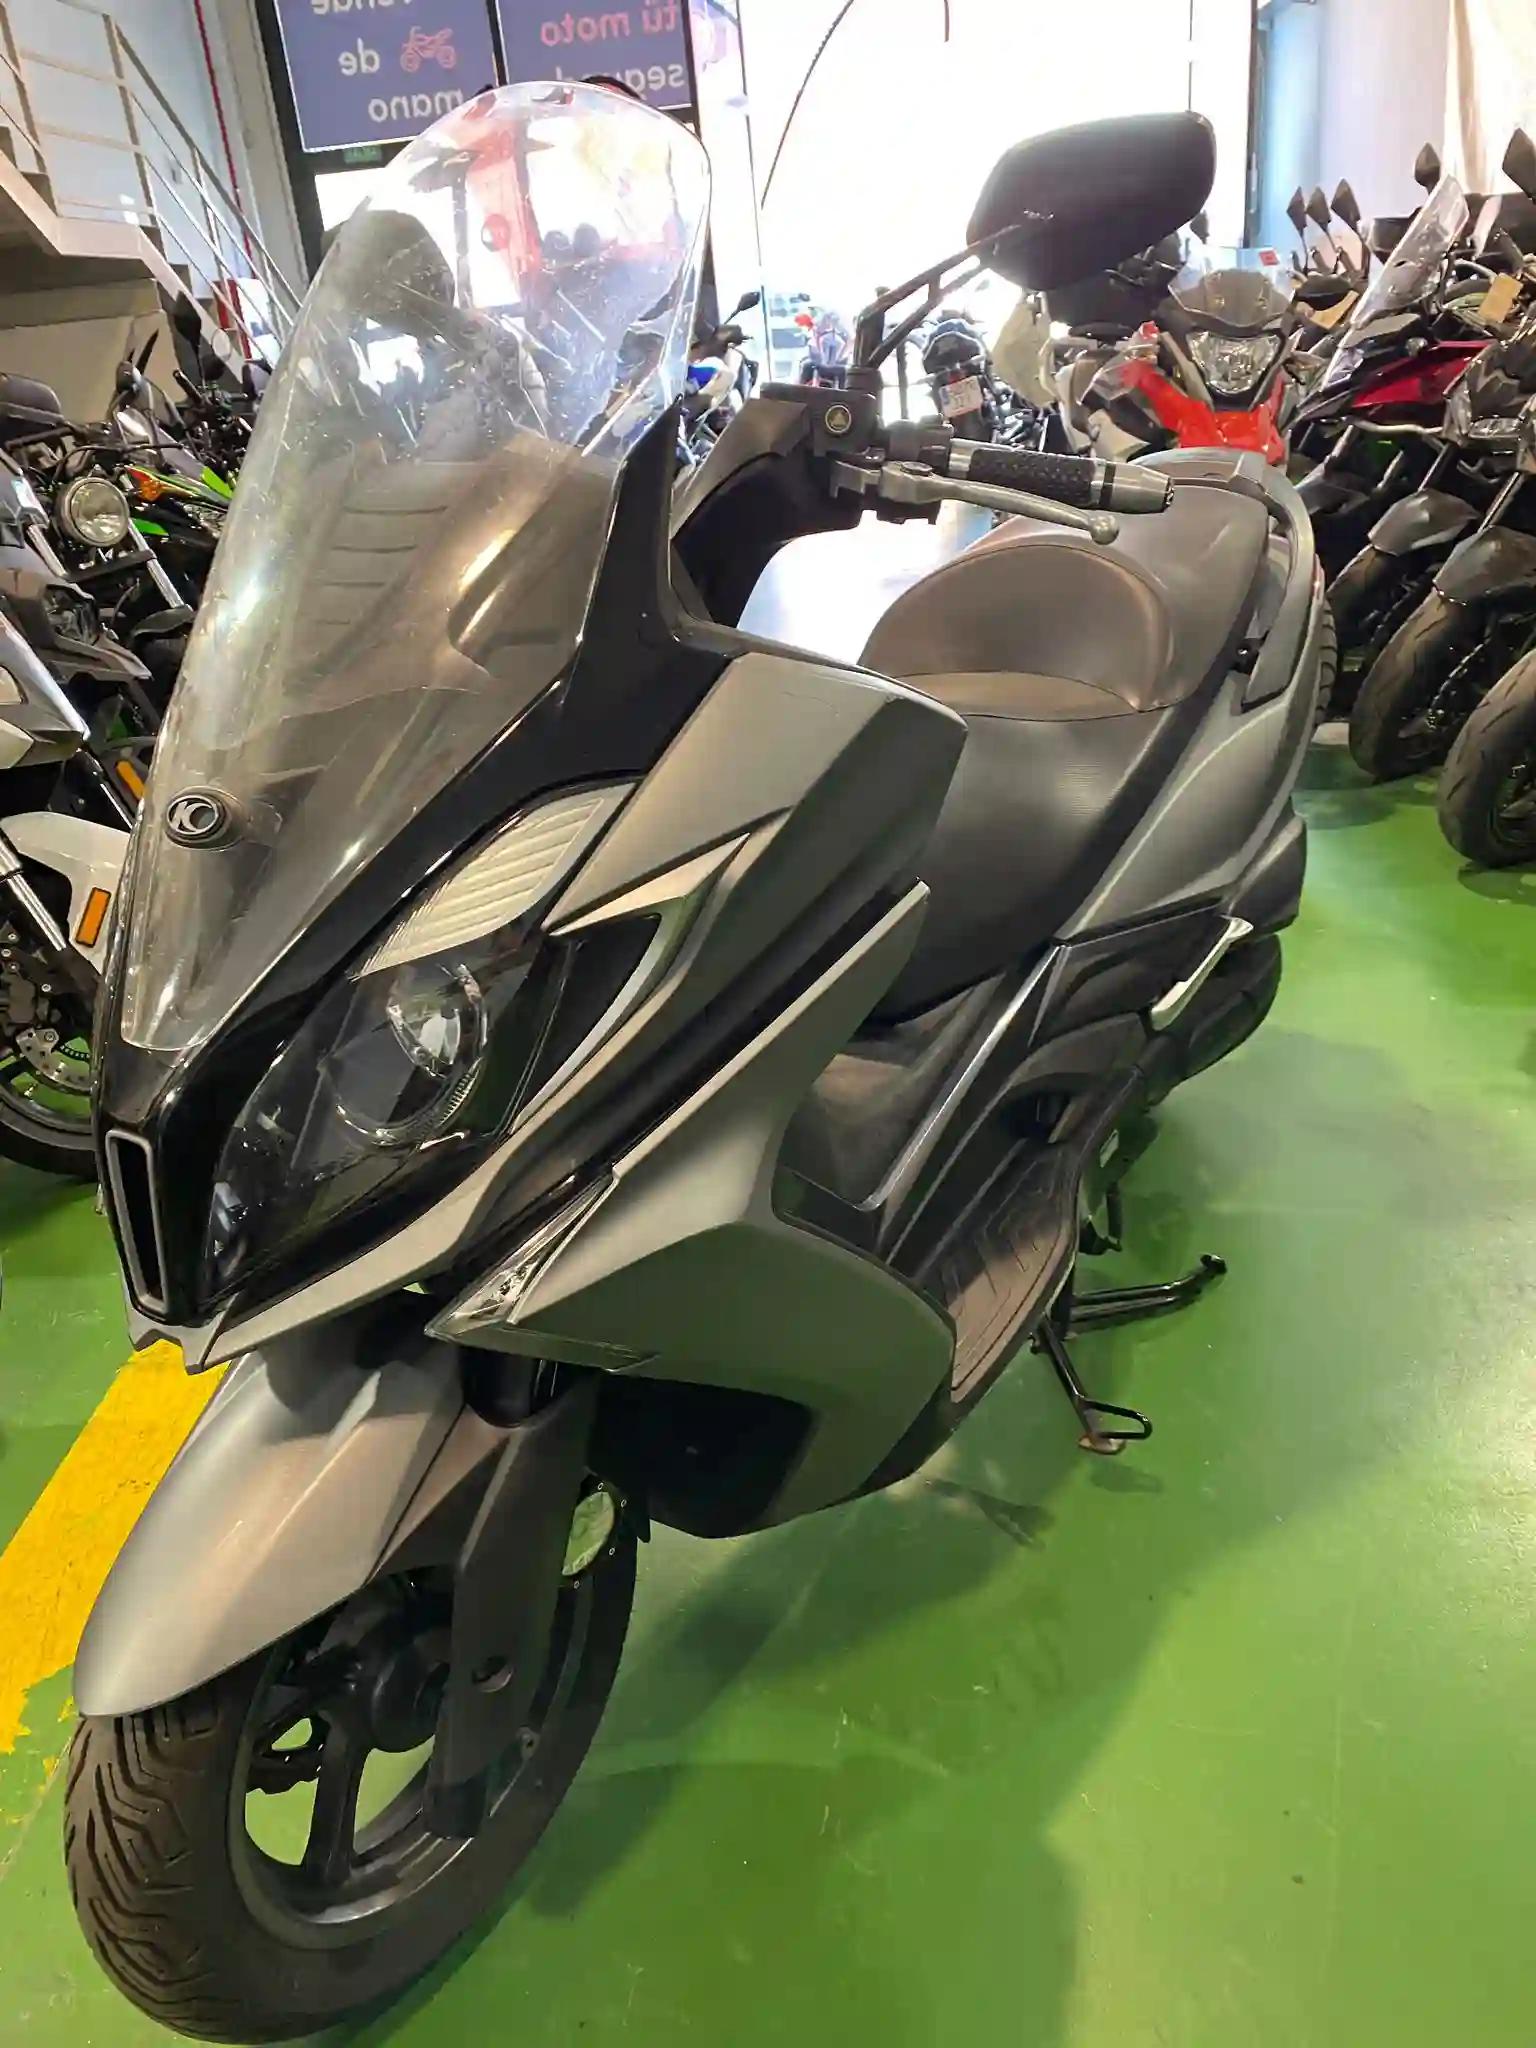 Moto KYMCO SUPER DINK 125 ABS de seguna mano del año 2019 en Madrid